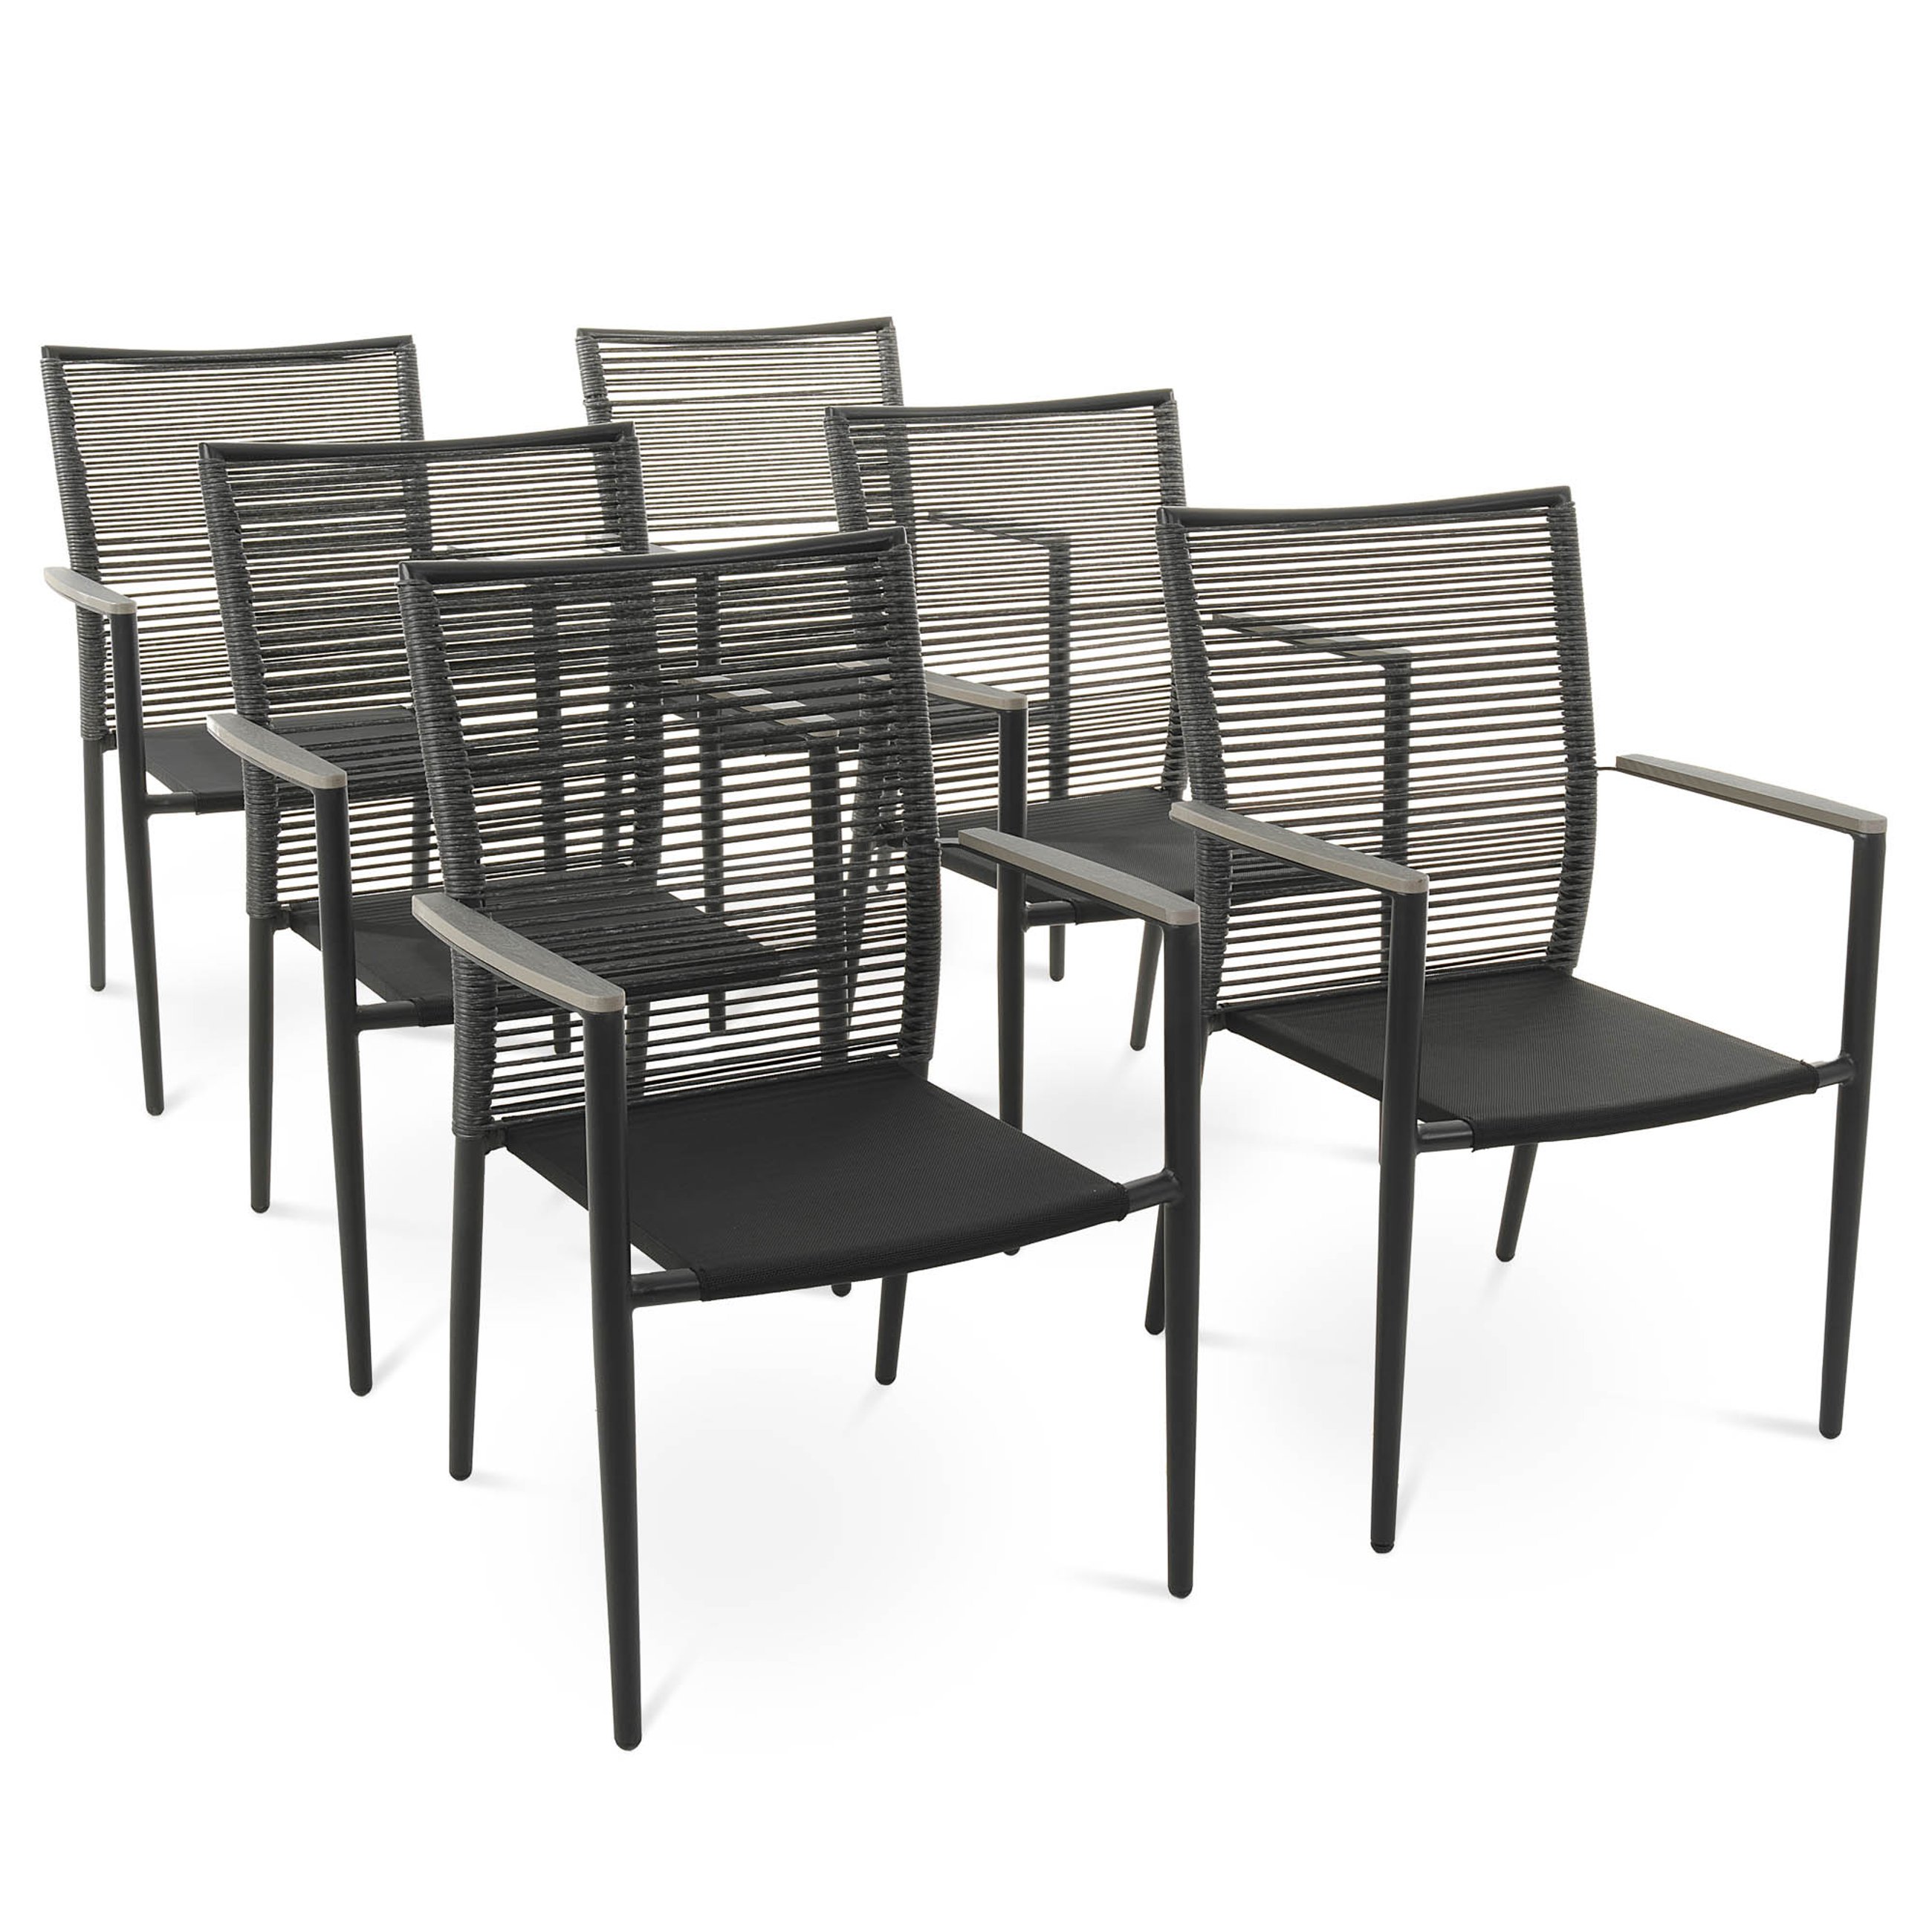 Zestaw 6 krzeseł ogrodowych Asti szare marki di volio zostały zaprojektowane z myślą o wygodzie użytkowania